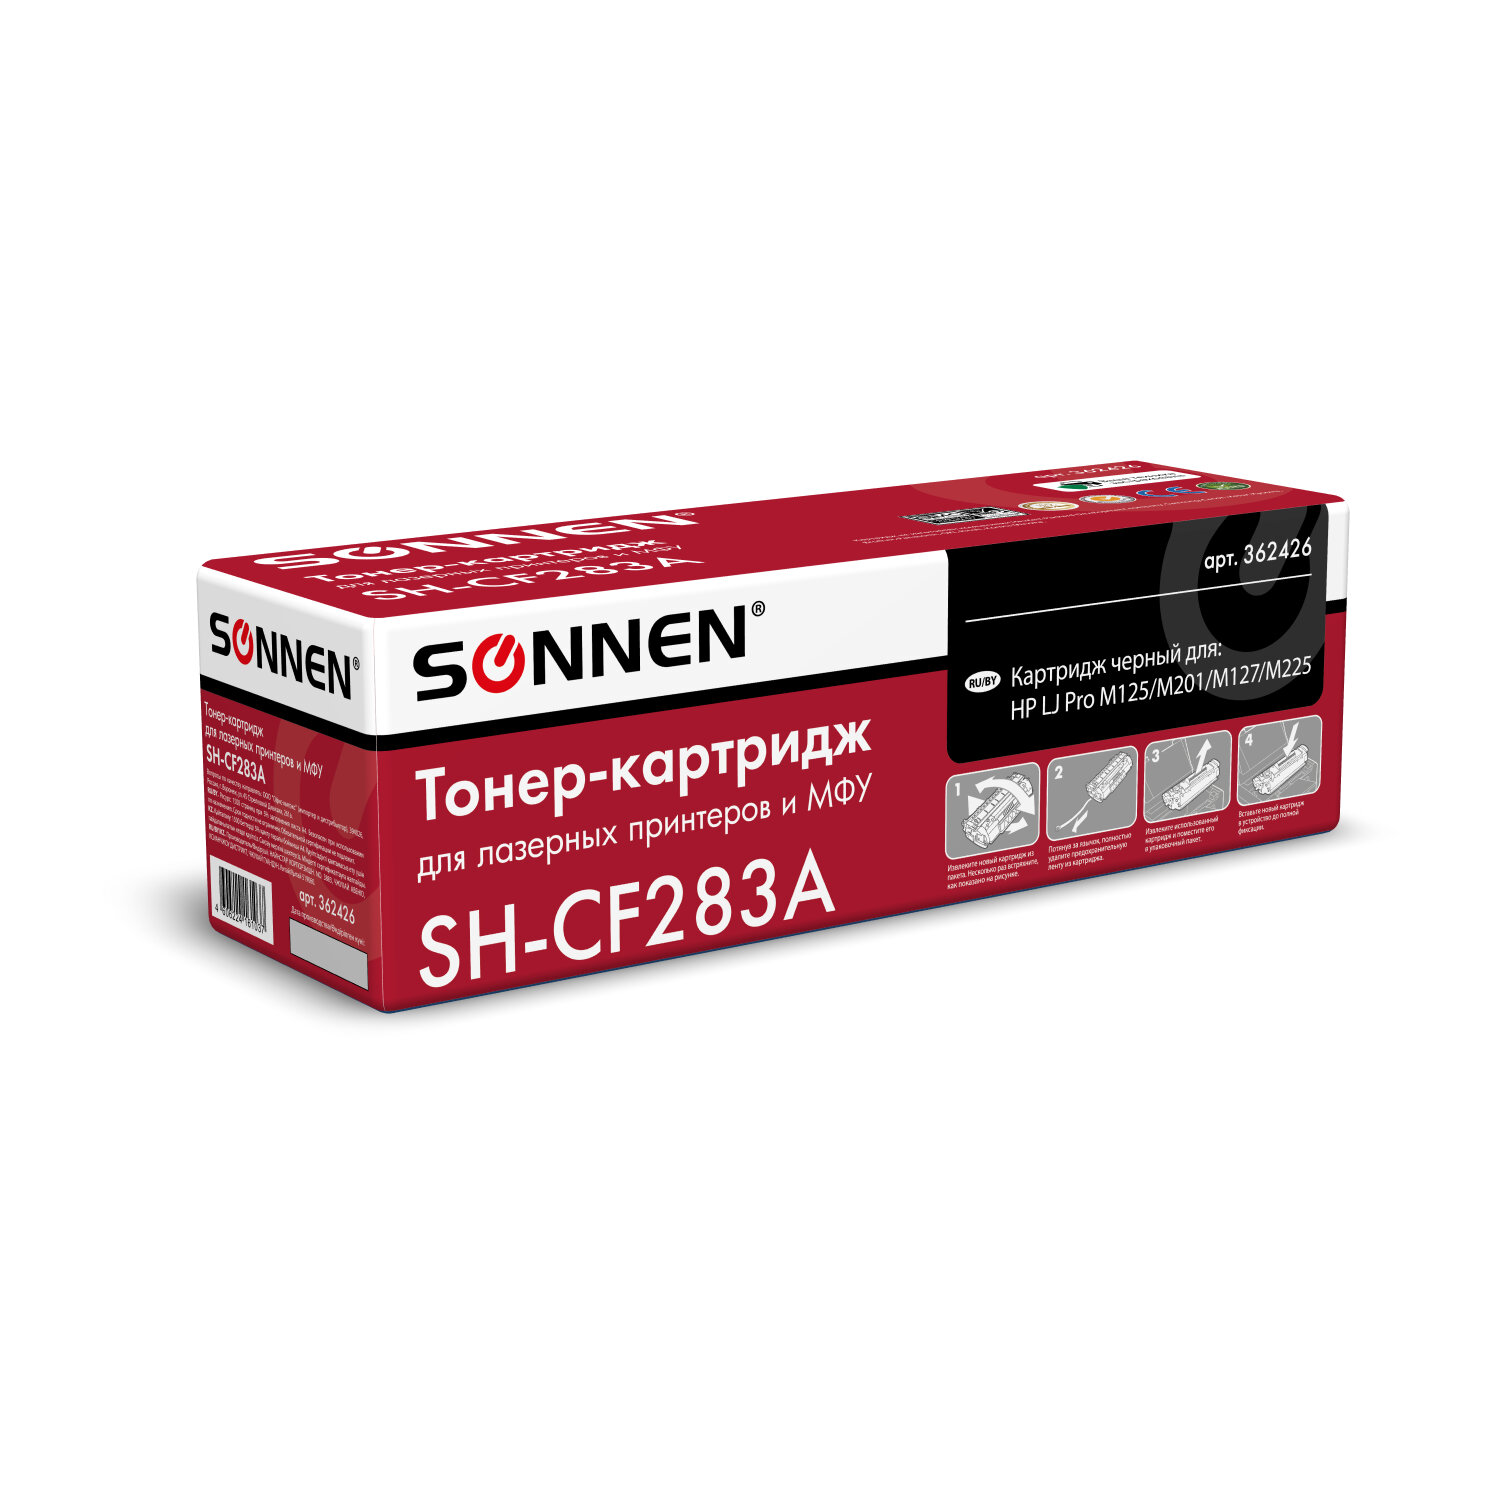 Картридж лазерный SONNEN (SH-CF283A) для HP LaserJet Pro M125/M201/M127/M225, ВЫСШЕЕ КАЧЕСТВО